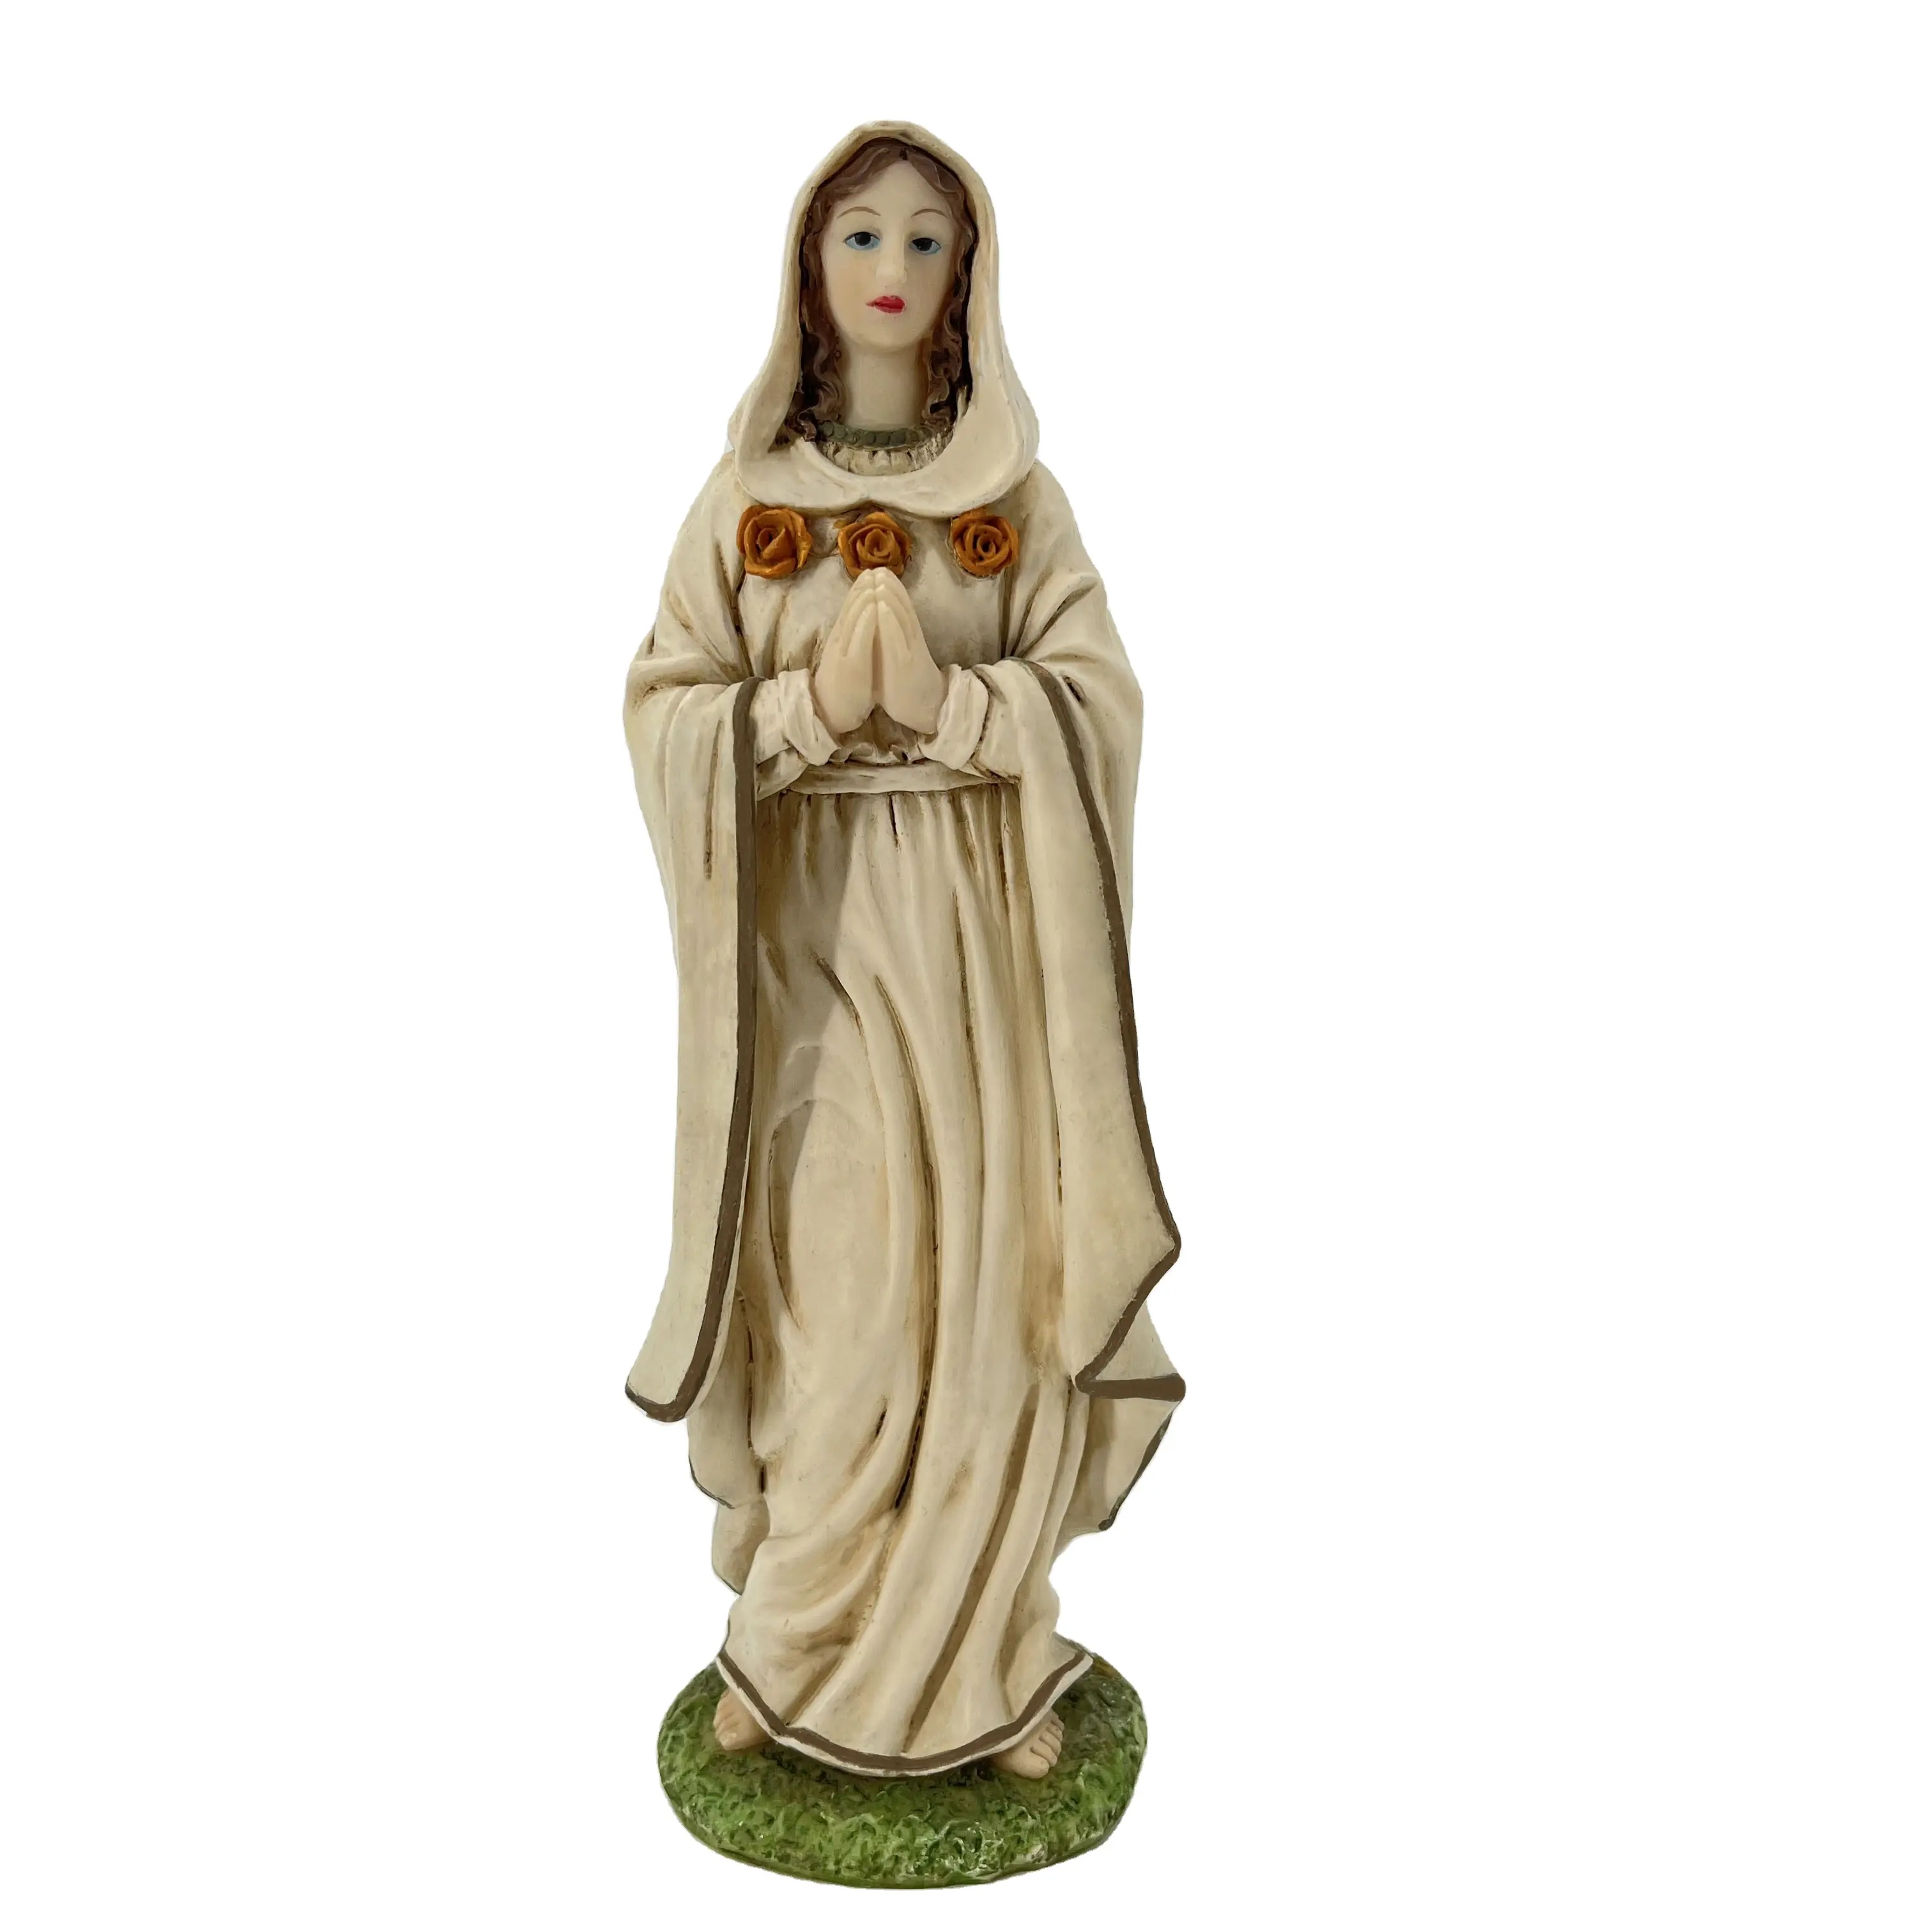 Résine Artisanat Belle Maria Ornement Vierge Marie Figurine Statues Religieuses Décoration de La Maison Europe Jésus Figurine XIAMEN Chine